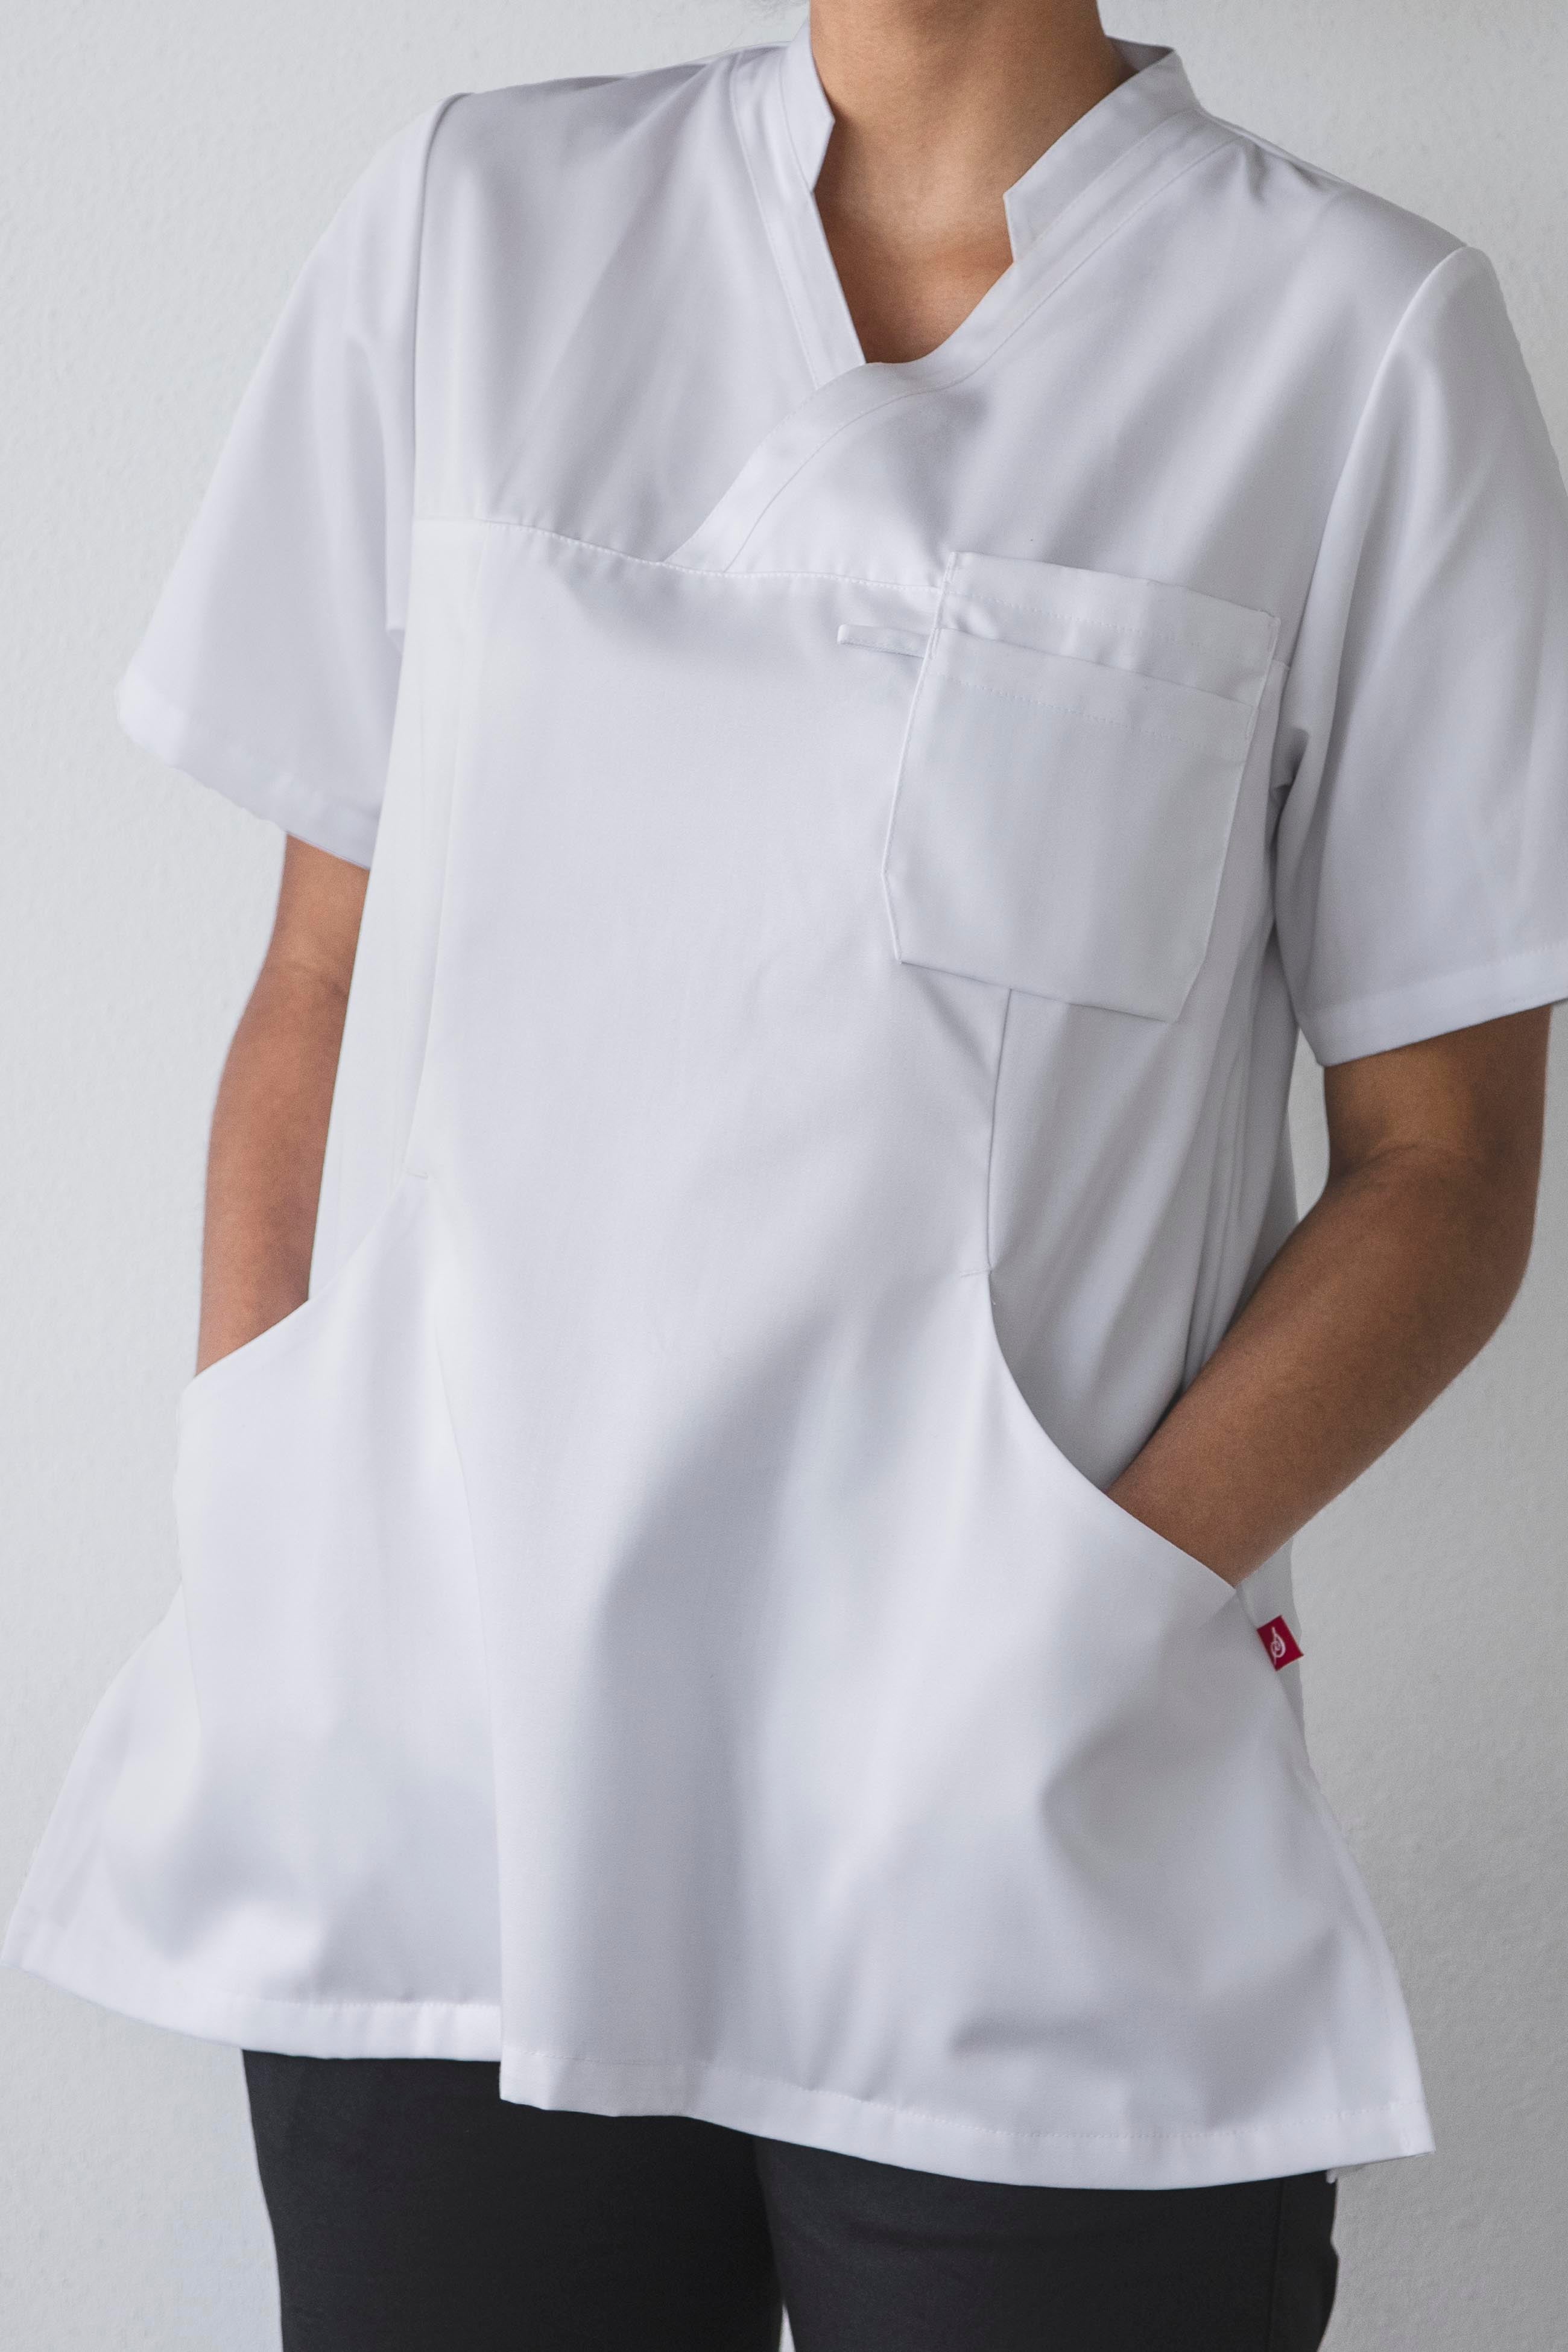 Professionell vårdpersonal i bekväm och slitstark Segers tunika, en del av vårt sortiment av kvalitativa vårdkläder.